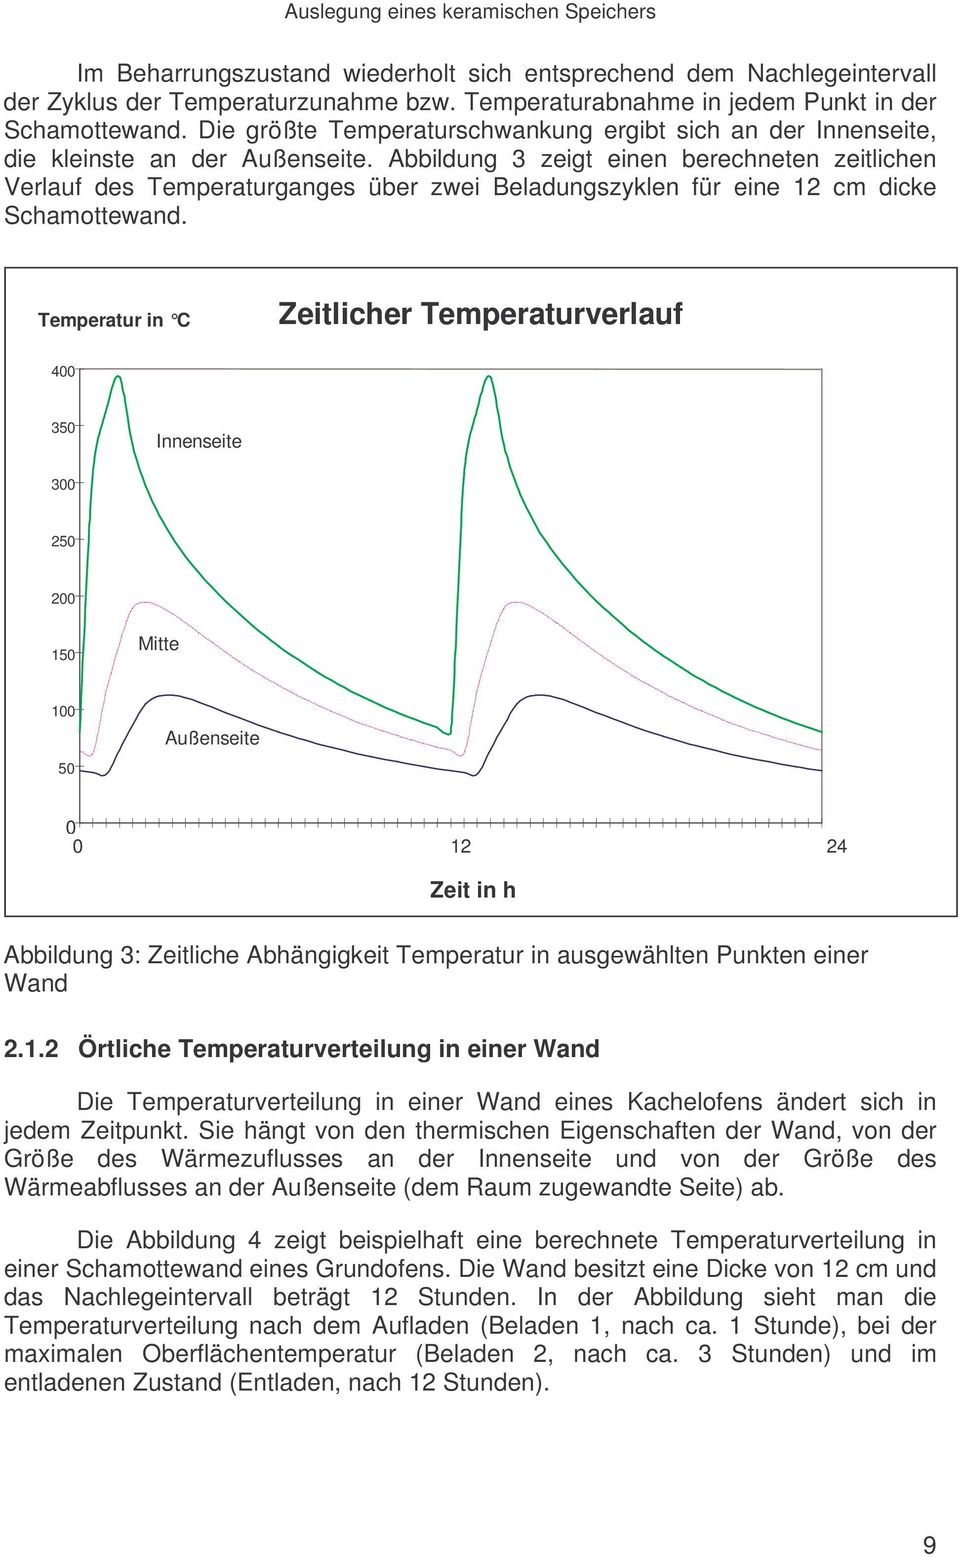 Abbildung 3 zeigt einen berechneten zeitlichen Verlauf des Temperaturganges über zwei Beladungszyklen für eine 12 cm dicke Schamottewand.